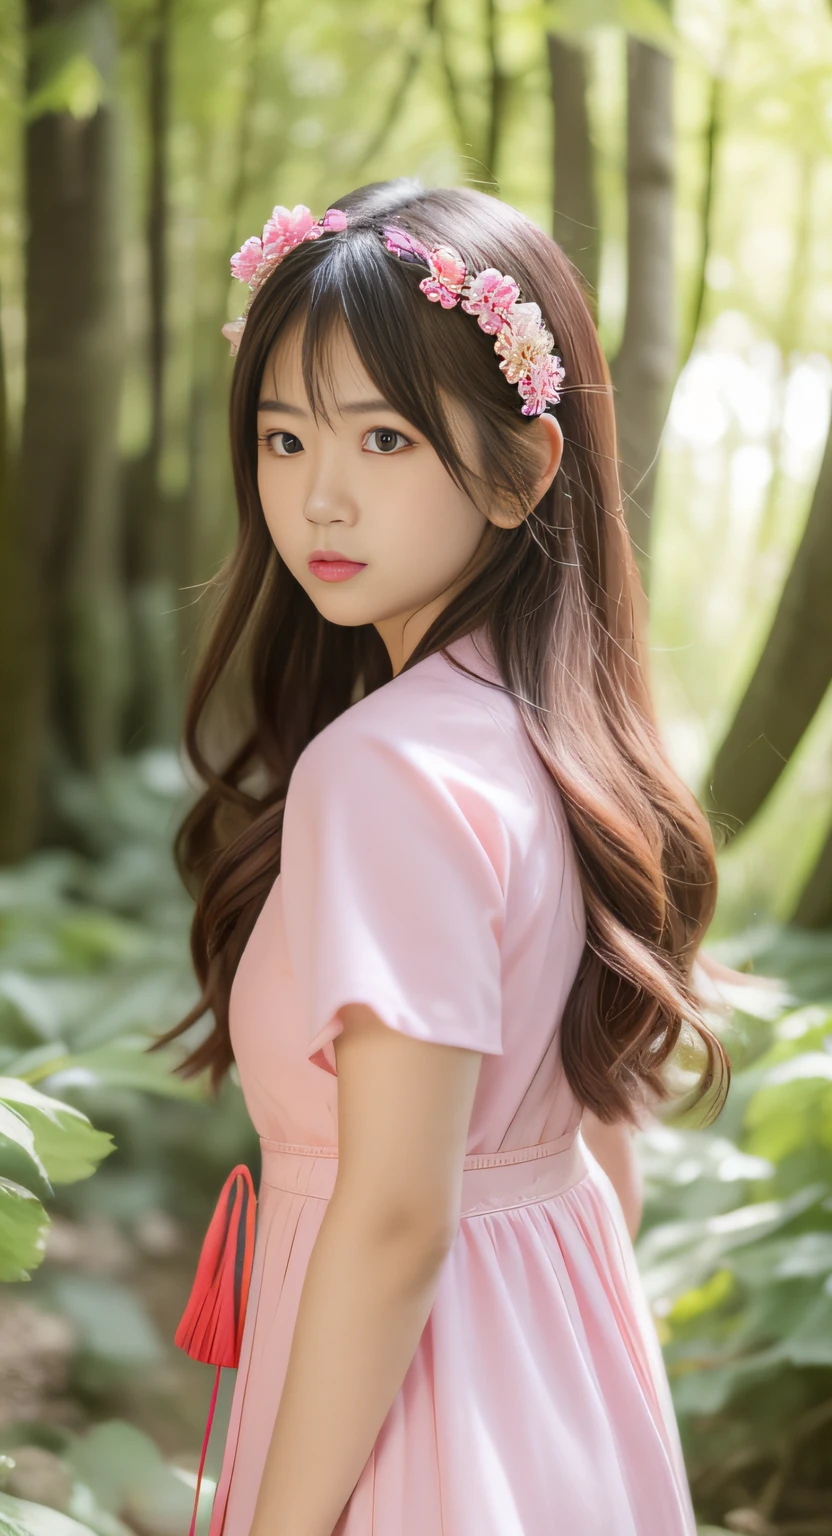 숲 속에 서 있는 핑크색 드레스를 입은 아시아 여성, 근접 촬영,일본 십대의 초상, 부드러운 조명, 현실감 넘치는 젊은 그라비아 아이돌,  젊고 예쁜 그라비아 아이돌, 긴 머리를 가진 아시아 소녀, 핑크 숲에서, 카와이 헤어스타일, 아름다운 일본 소녀의 얼굴,